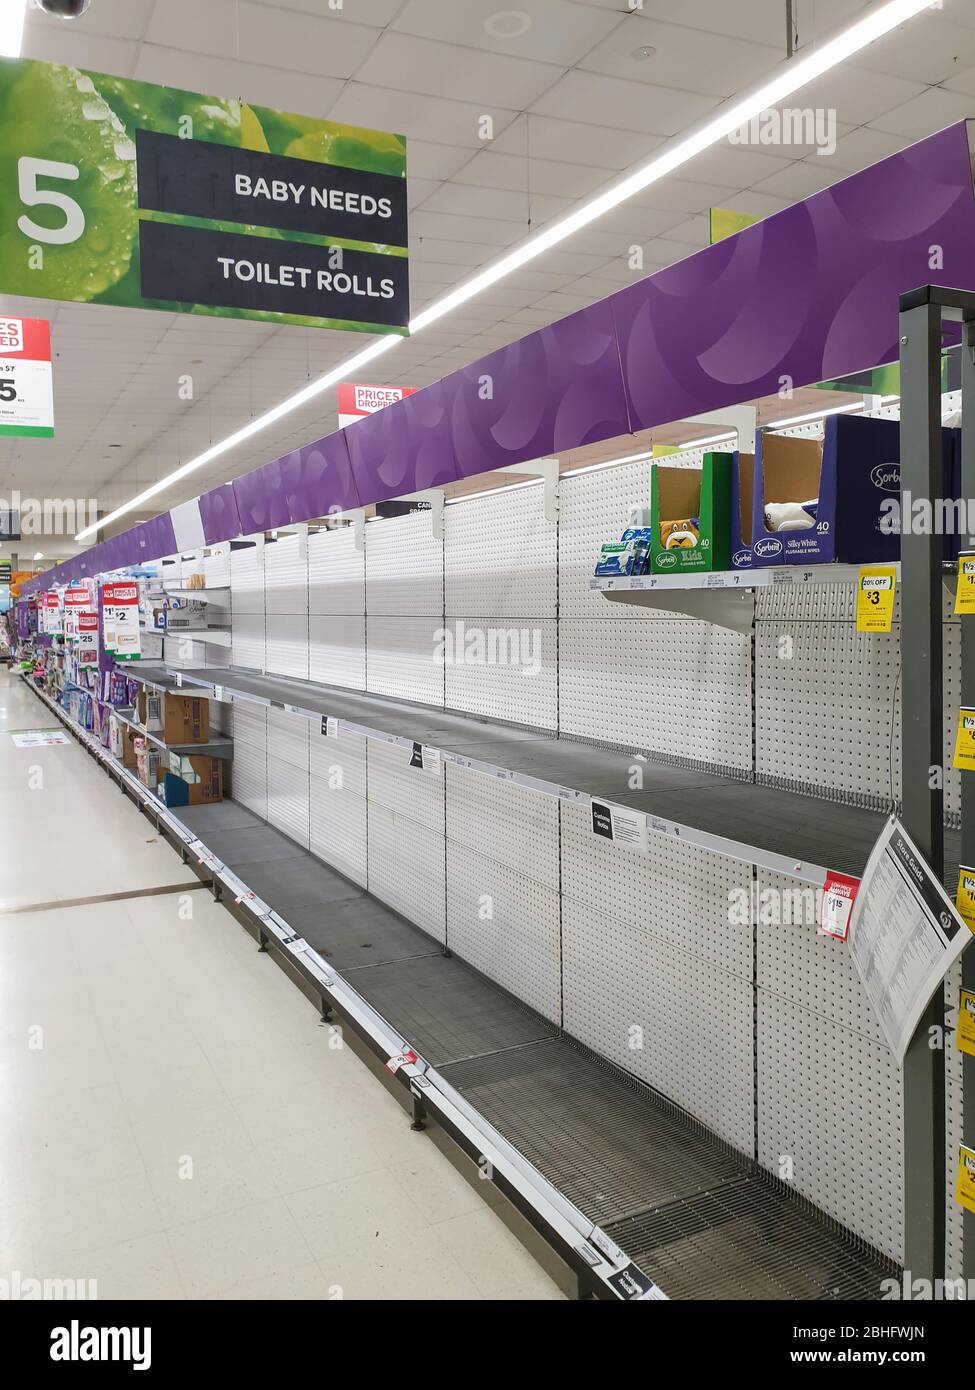 Gold Coast, Australien - 9. März 2020: Supermarkt leeres Baby braucht Regale in der Angst vor Coronavirus, panischen Käufern beim Kauf und Vorratskapieren von Babybedürfnissen Stockfoto